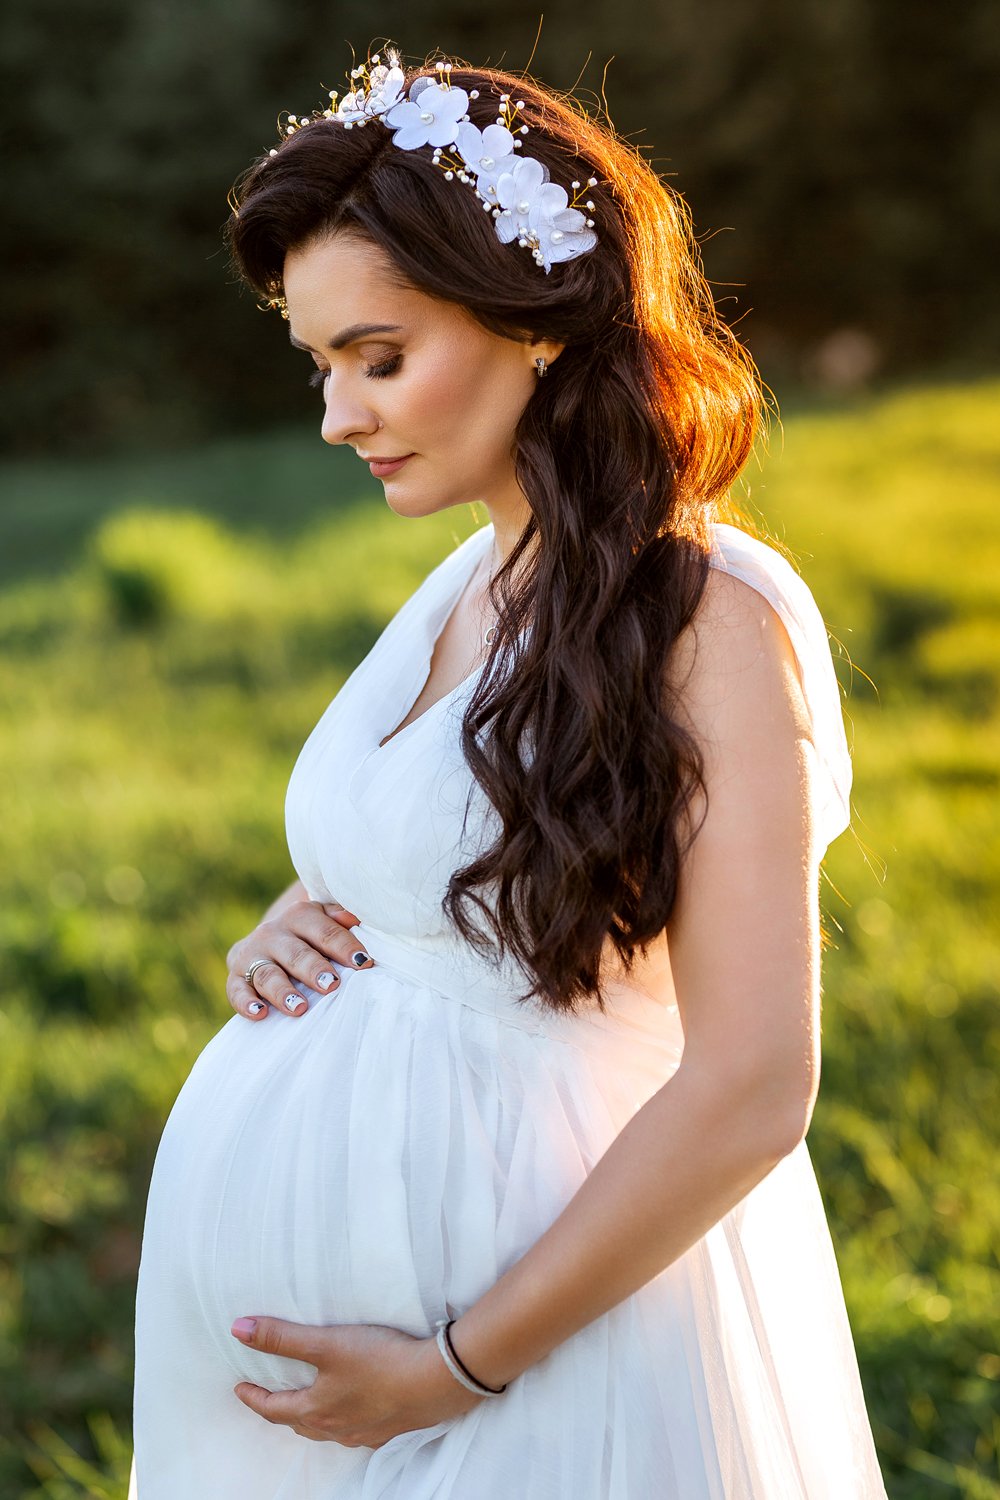 Платье напрокат для беременных на фотосессию. Фотосессия беременных в Коломенском. Аренда платьев для беременных для фотосессии. Нежный макияж для фотосессии беременной. Прокат коломна